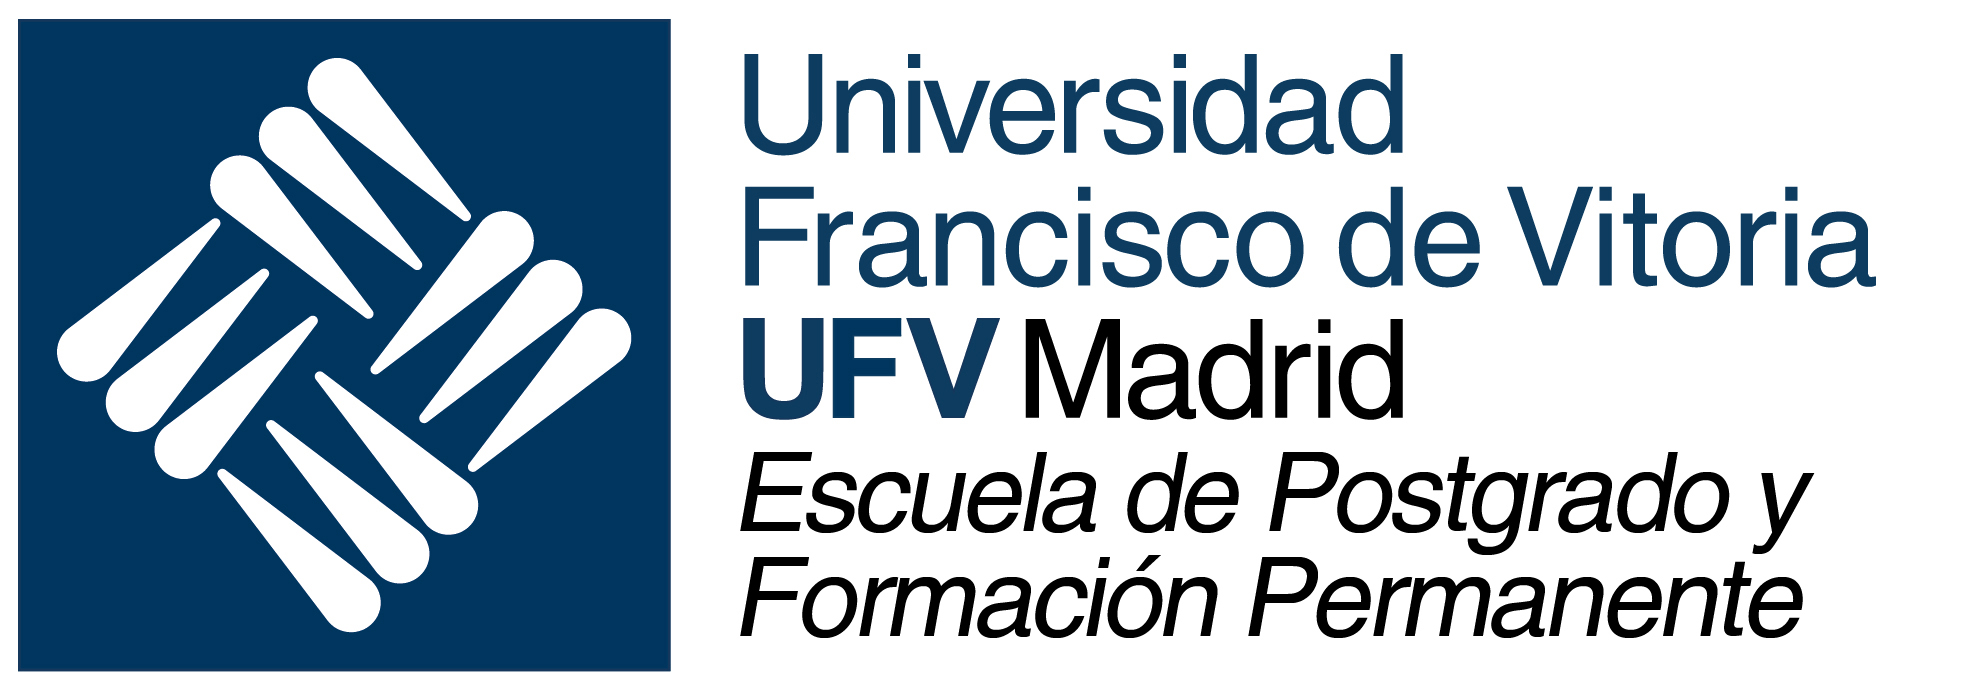 Signo y logotipo ufv